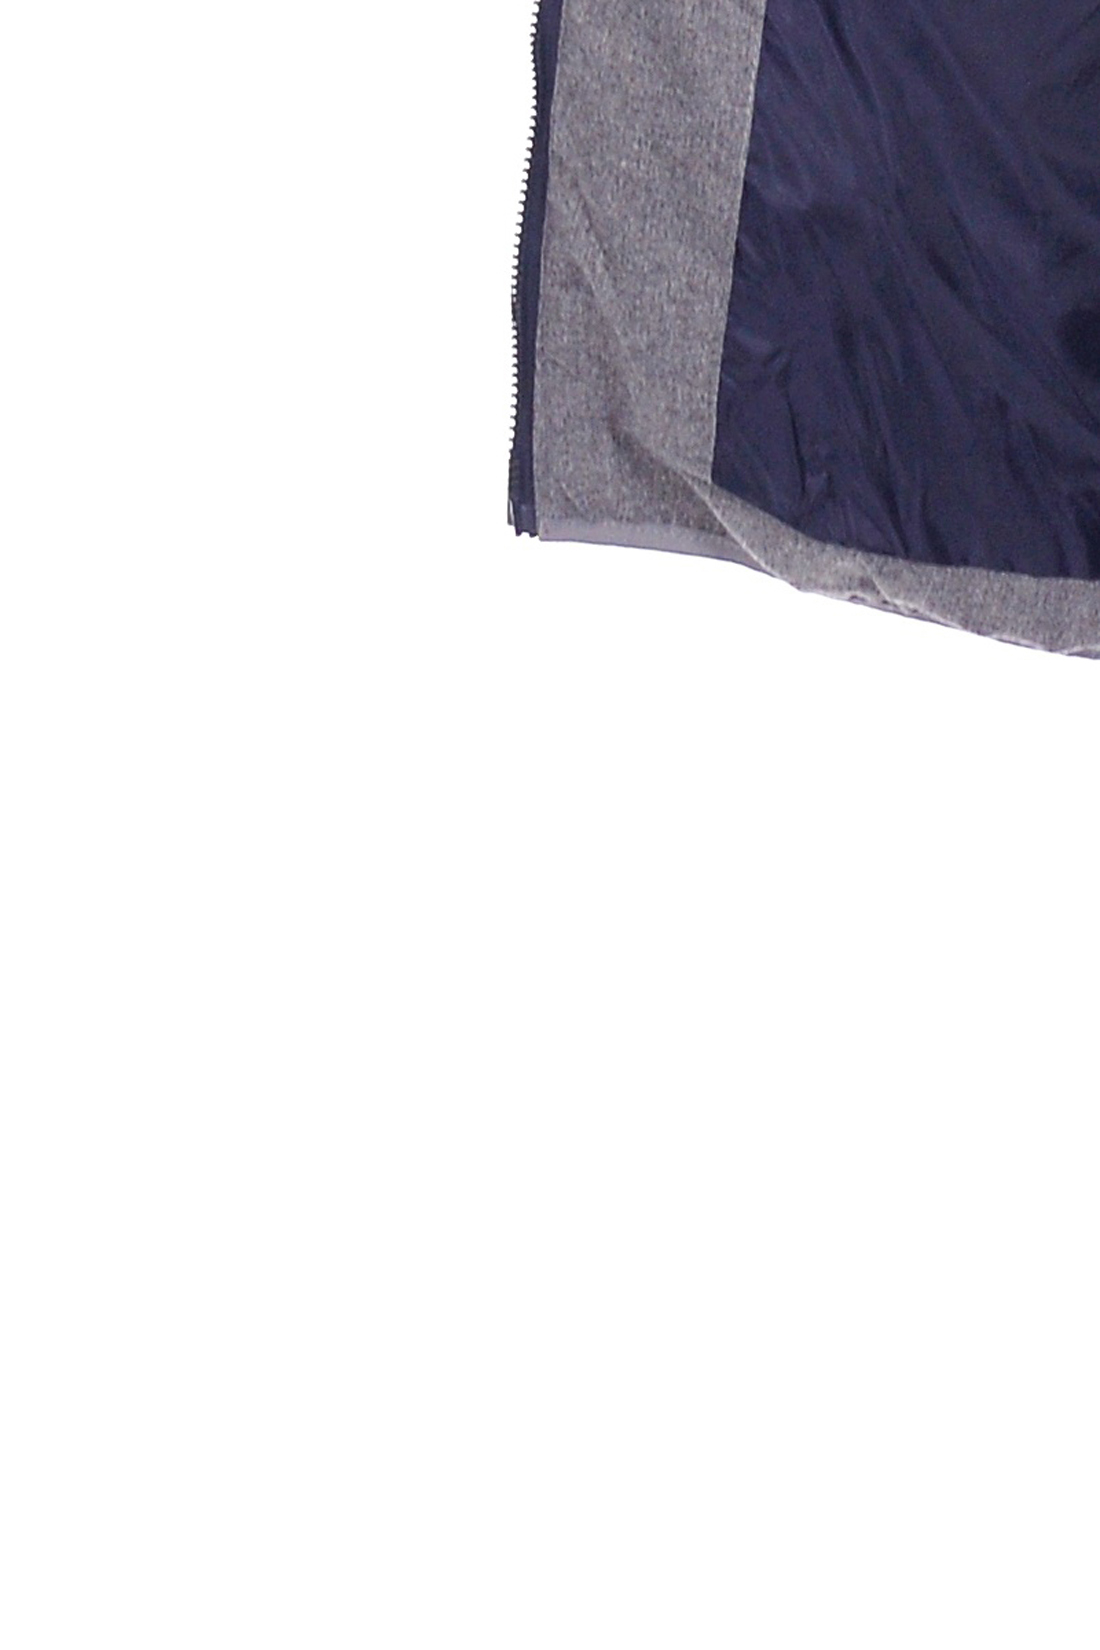 Лёгкая куртка с контрастной отделкой (арт. baon B539553), размер XXL, цвет синий Лёгкая куртка с контрастной отделкой (арт. baon B539553) - фото 3